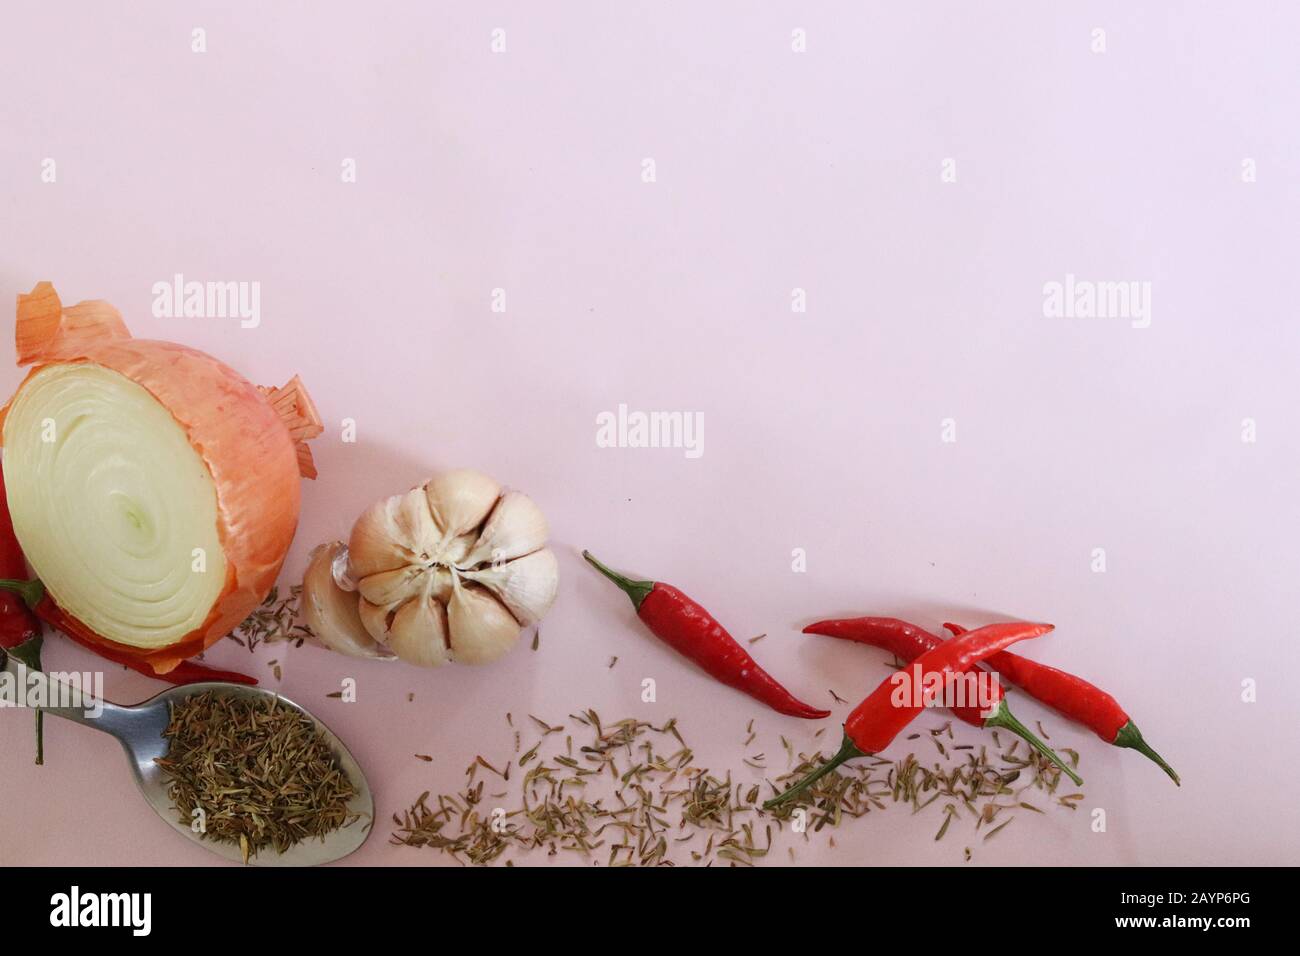 Gewürze und Kräuter zum Kochen vor einem rosafarbenen Hintergrund, um das Konzept von Gastronomie, Küche, Kochen und gesundem Leben zu zeigen Stockfoto